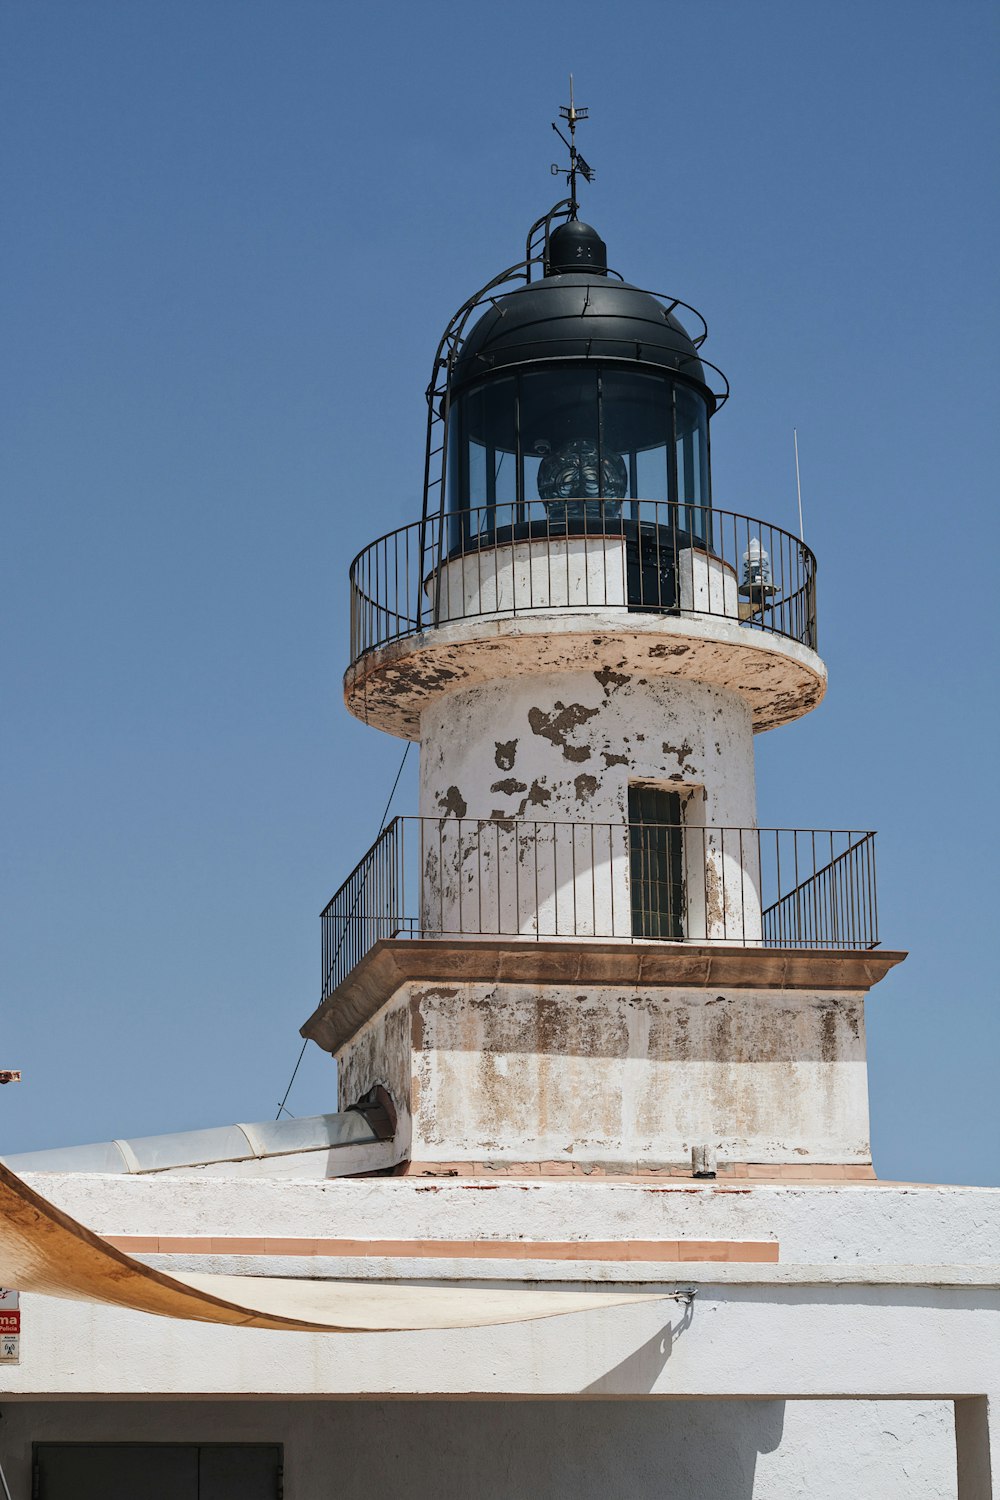 a lighthouse on a building